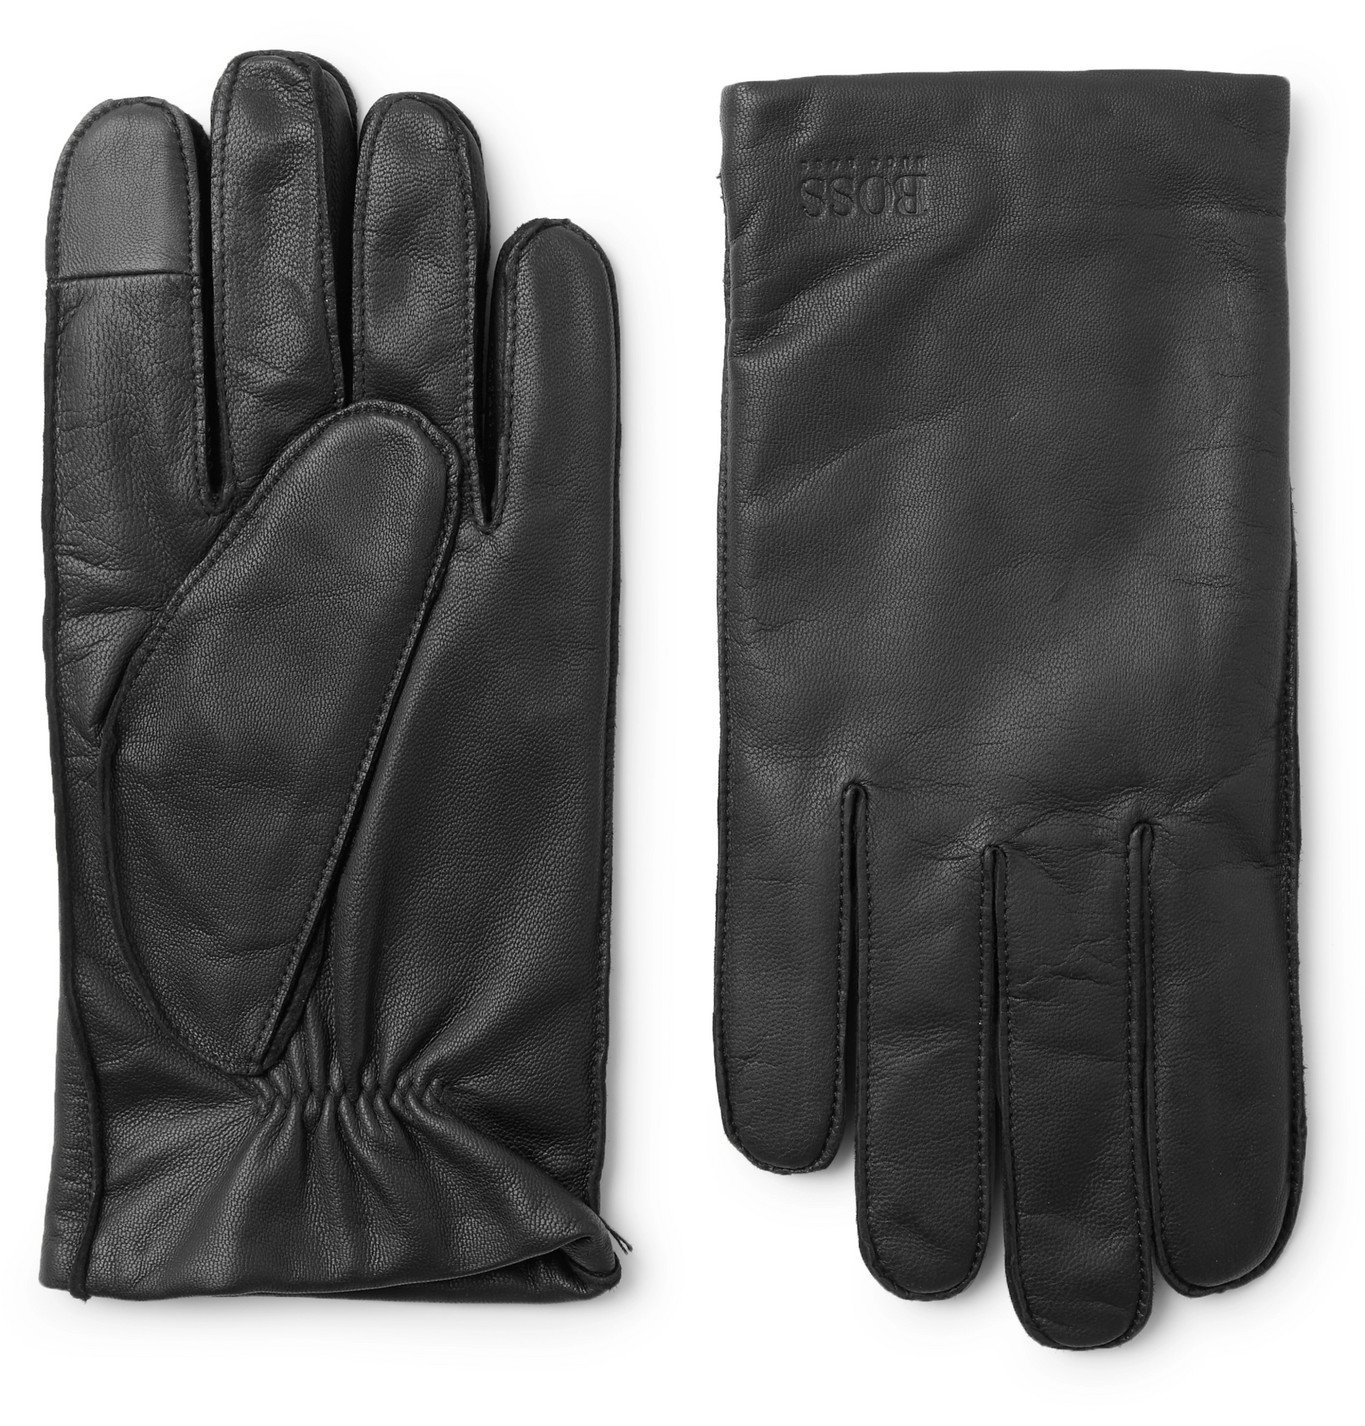 hugo boss leather gloves